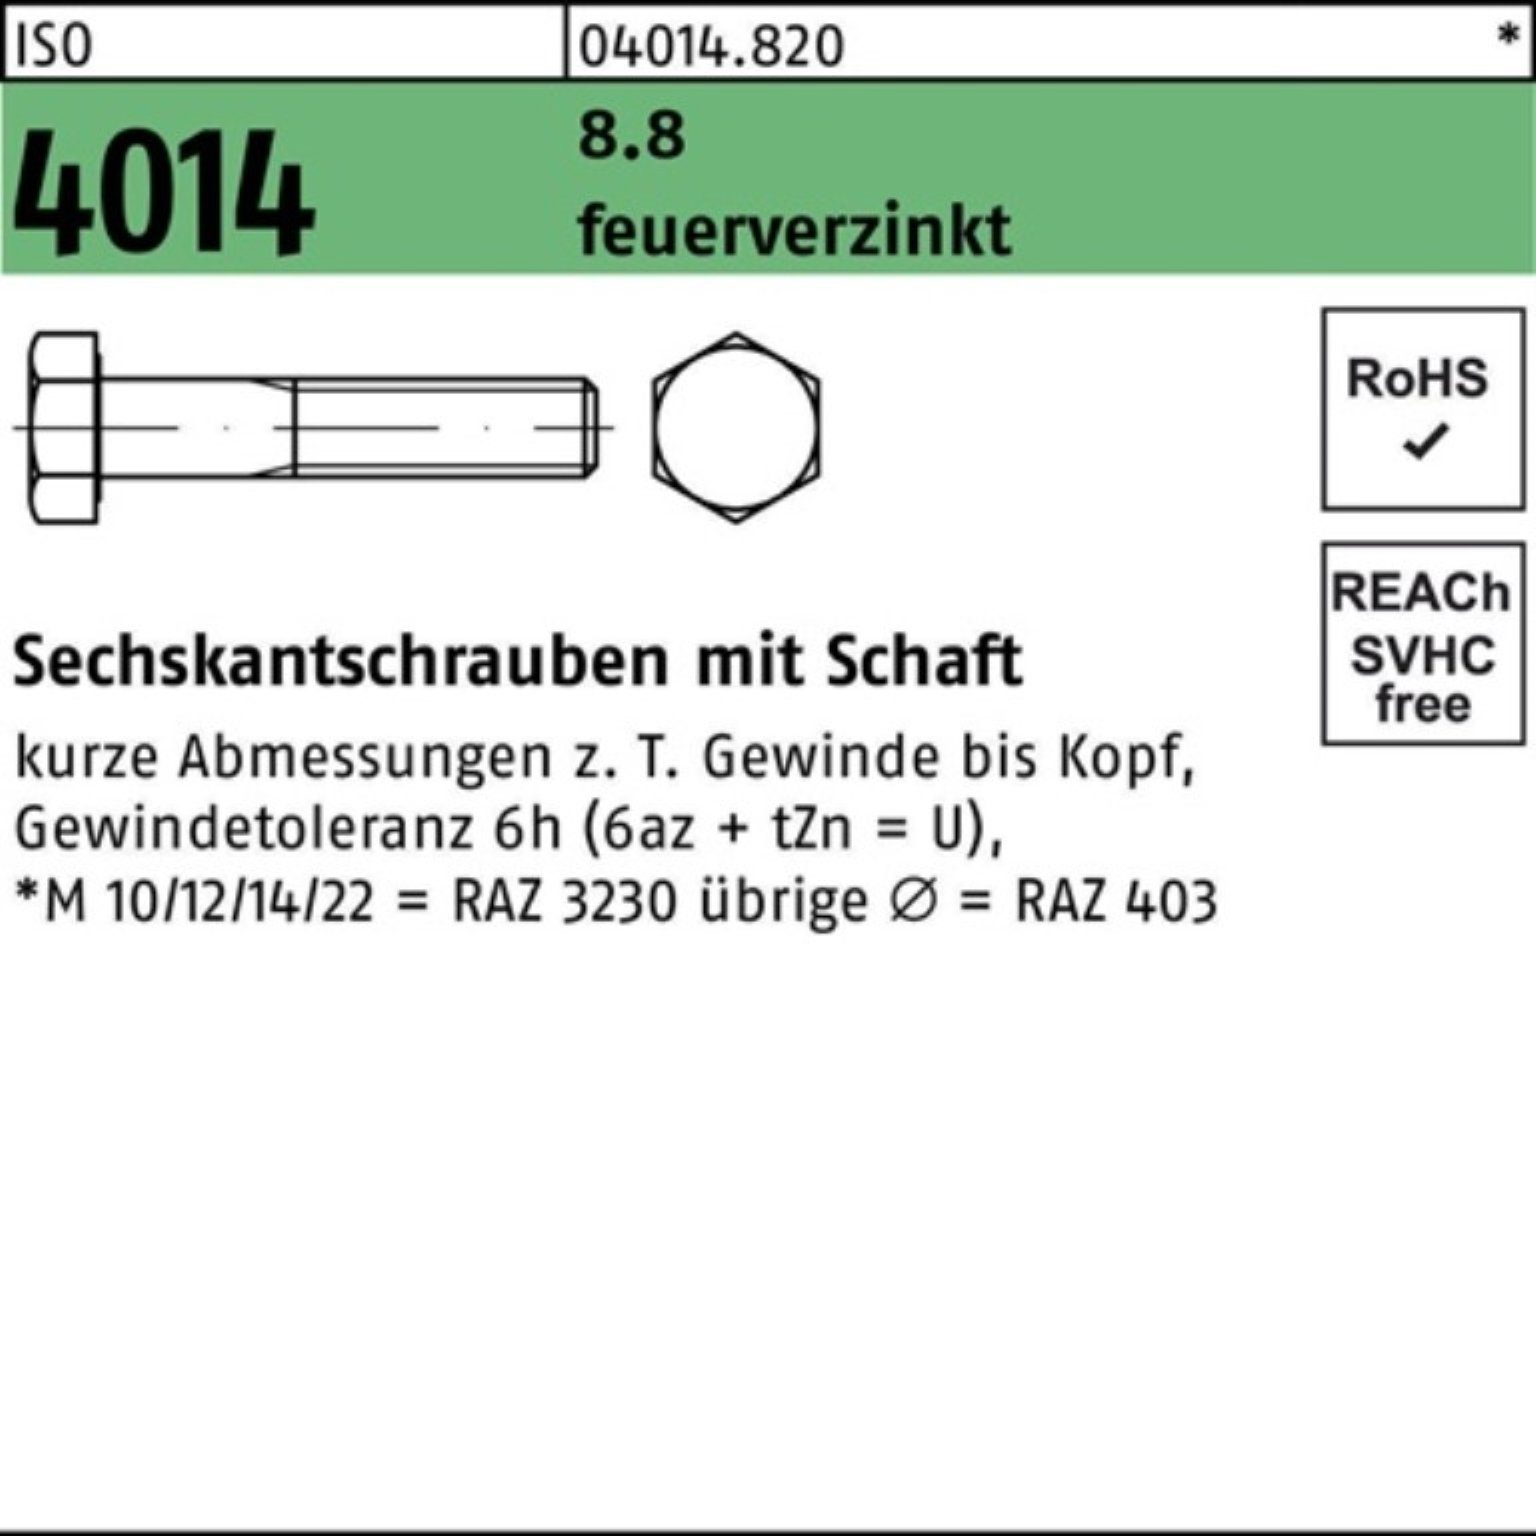 Bufab Sechskantschraube 100er Pack Sechskantschraube 4014 Schaft 8.8 ISO 2 150 feuerverz. M20x